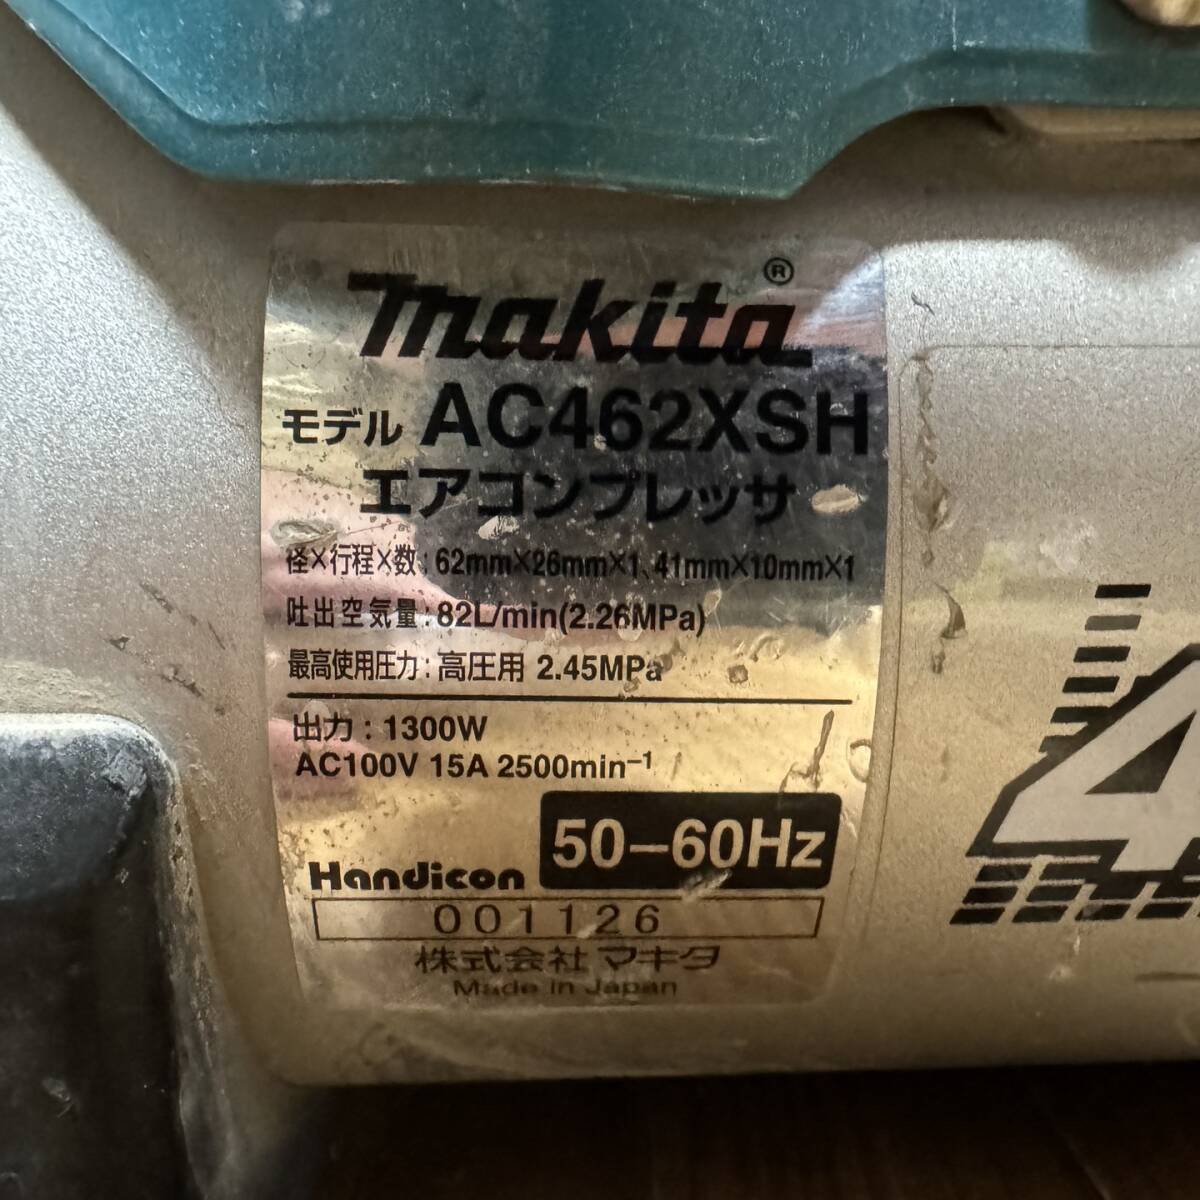  есть перевод Makita воздушный компрессор AC462XSH